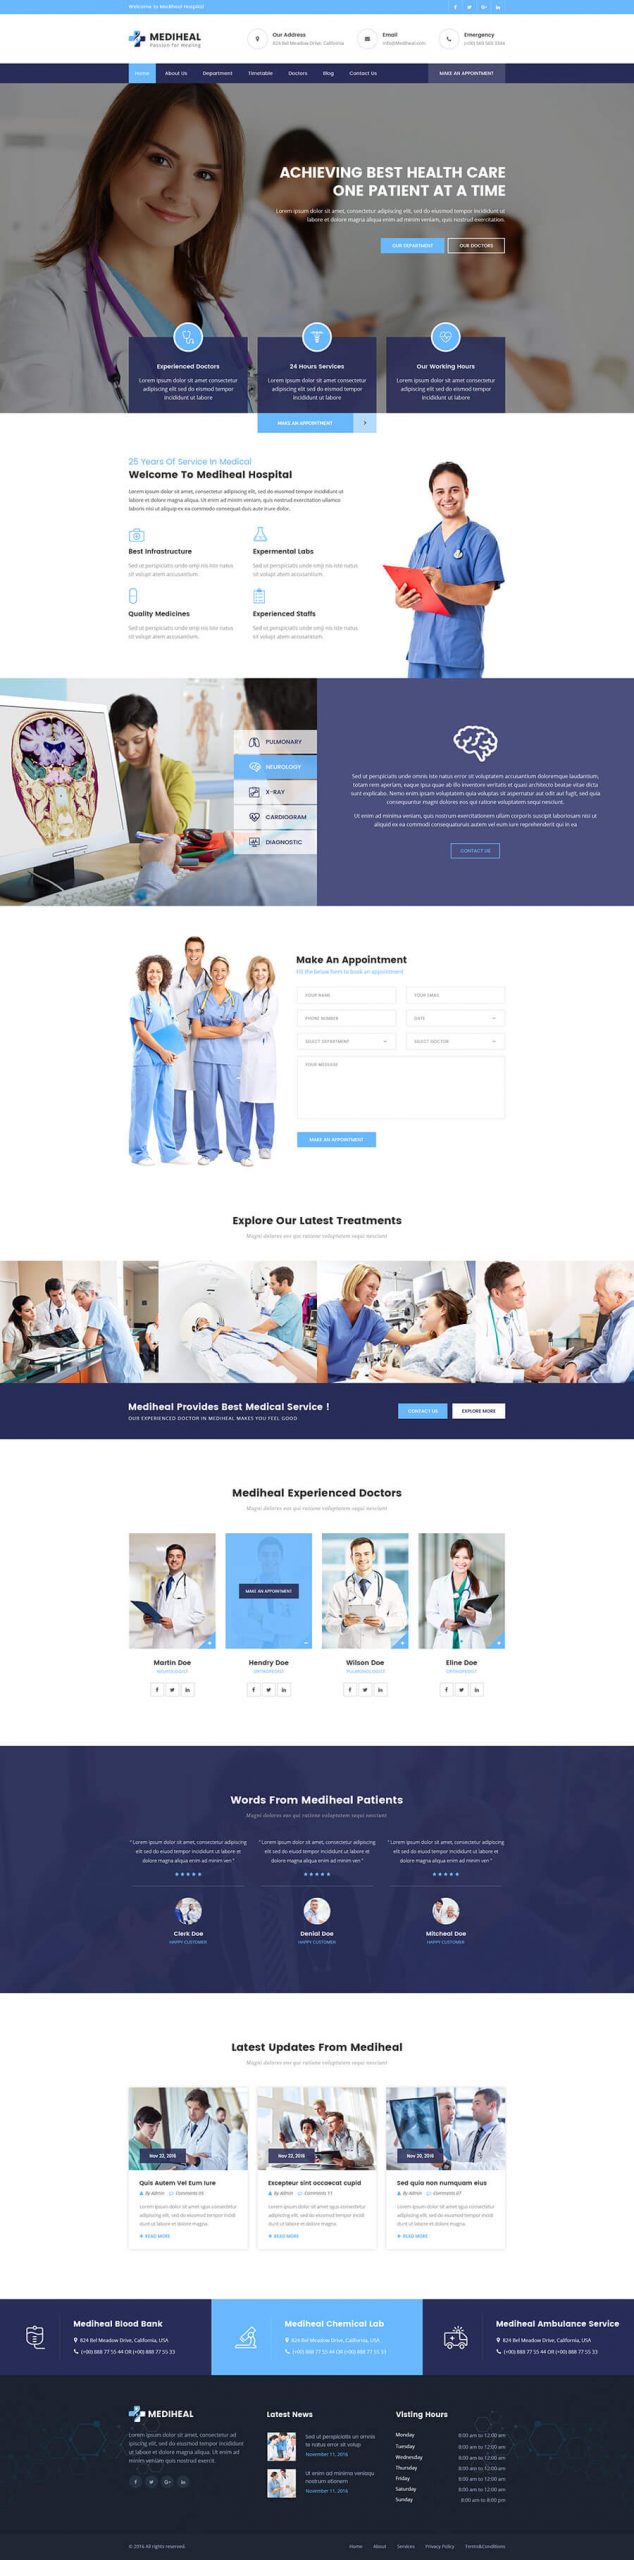 thiết kế website phòng khám, thiết kế website bệnh viện, thiết kế website nha khoa chuyên nghiệp